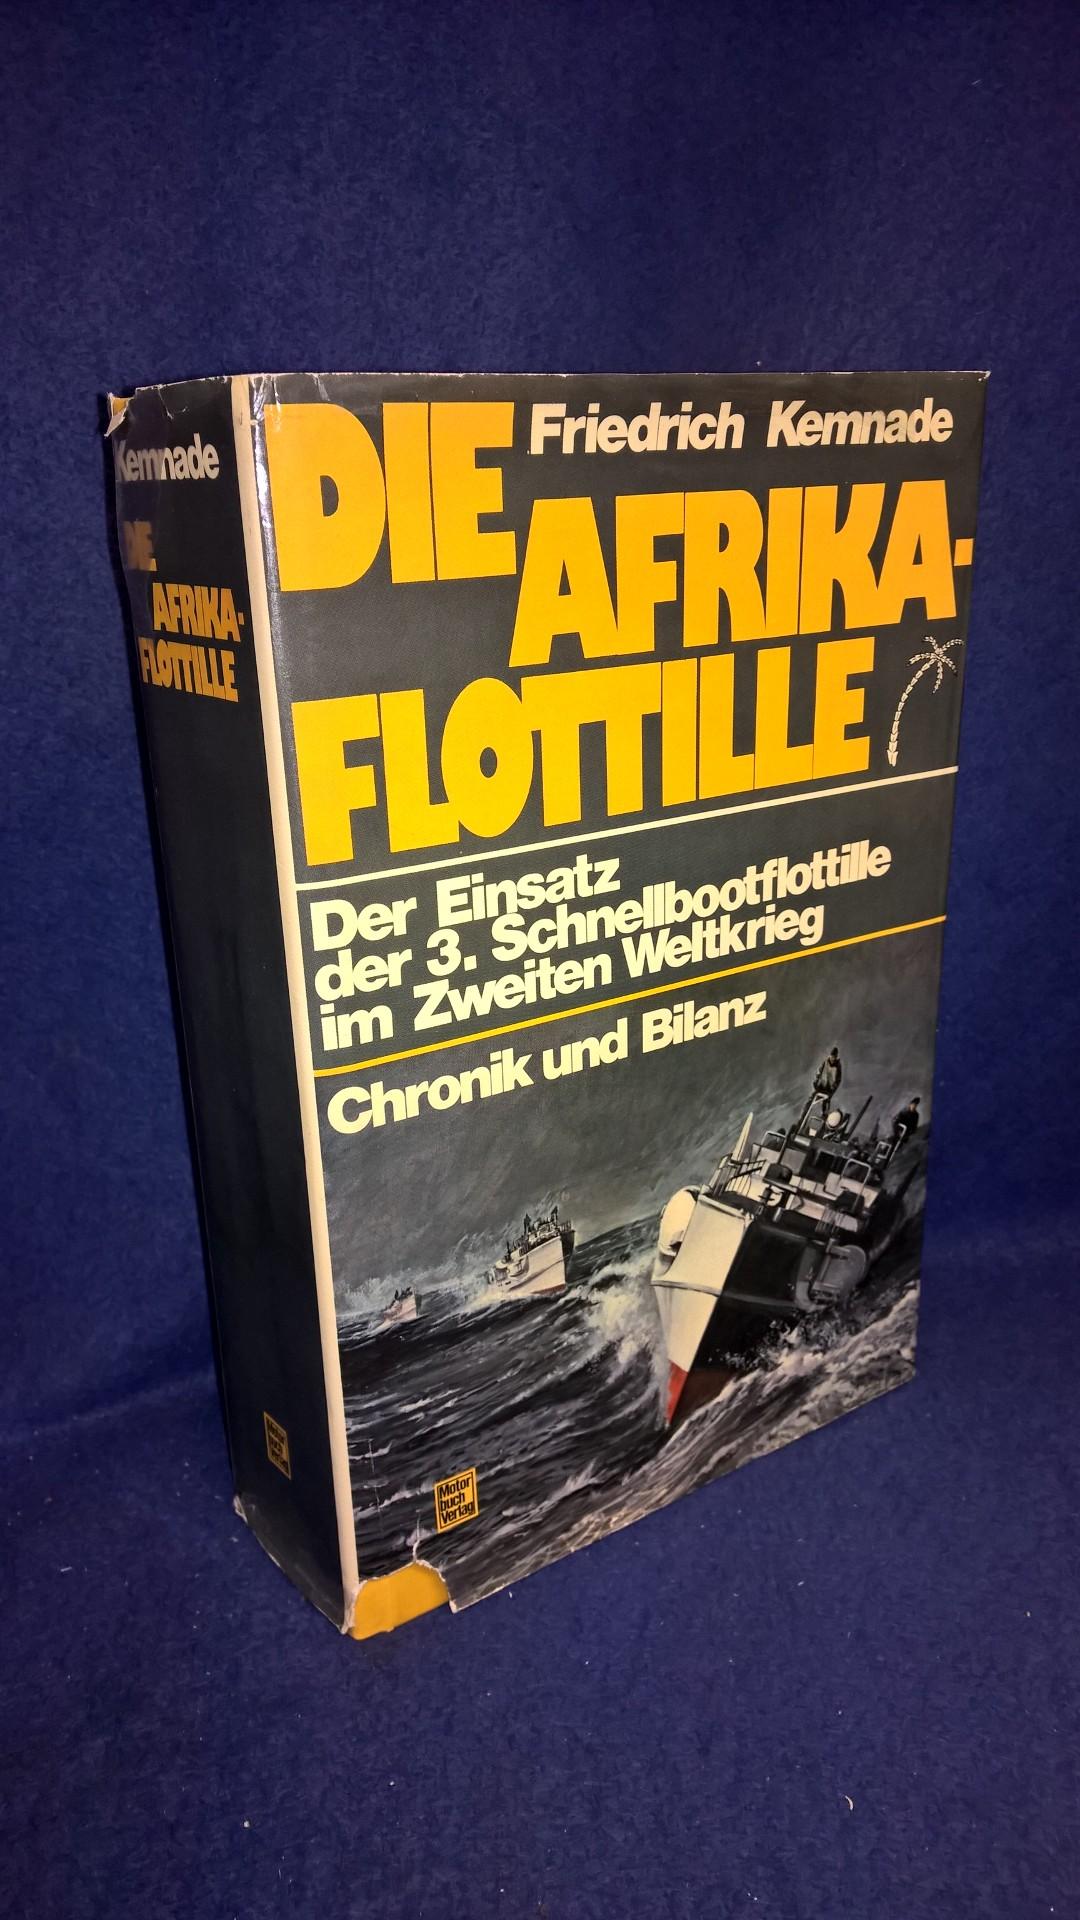 Die Afrika-Flottille. Chronik und Bilanz. Der Einsatz der 3. Schnellbootflottille im Zweiten Weltkrieg.